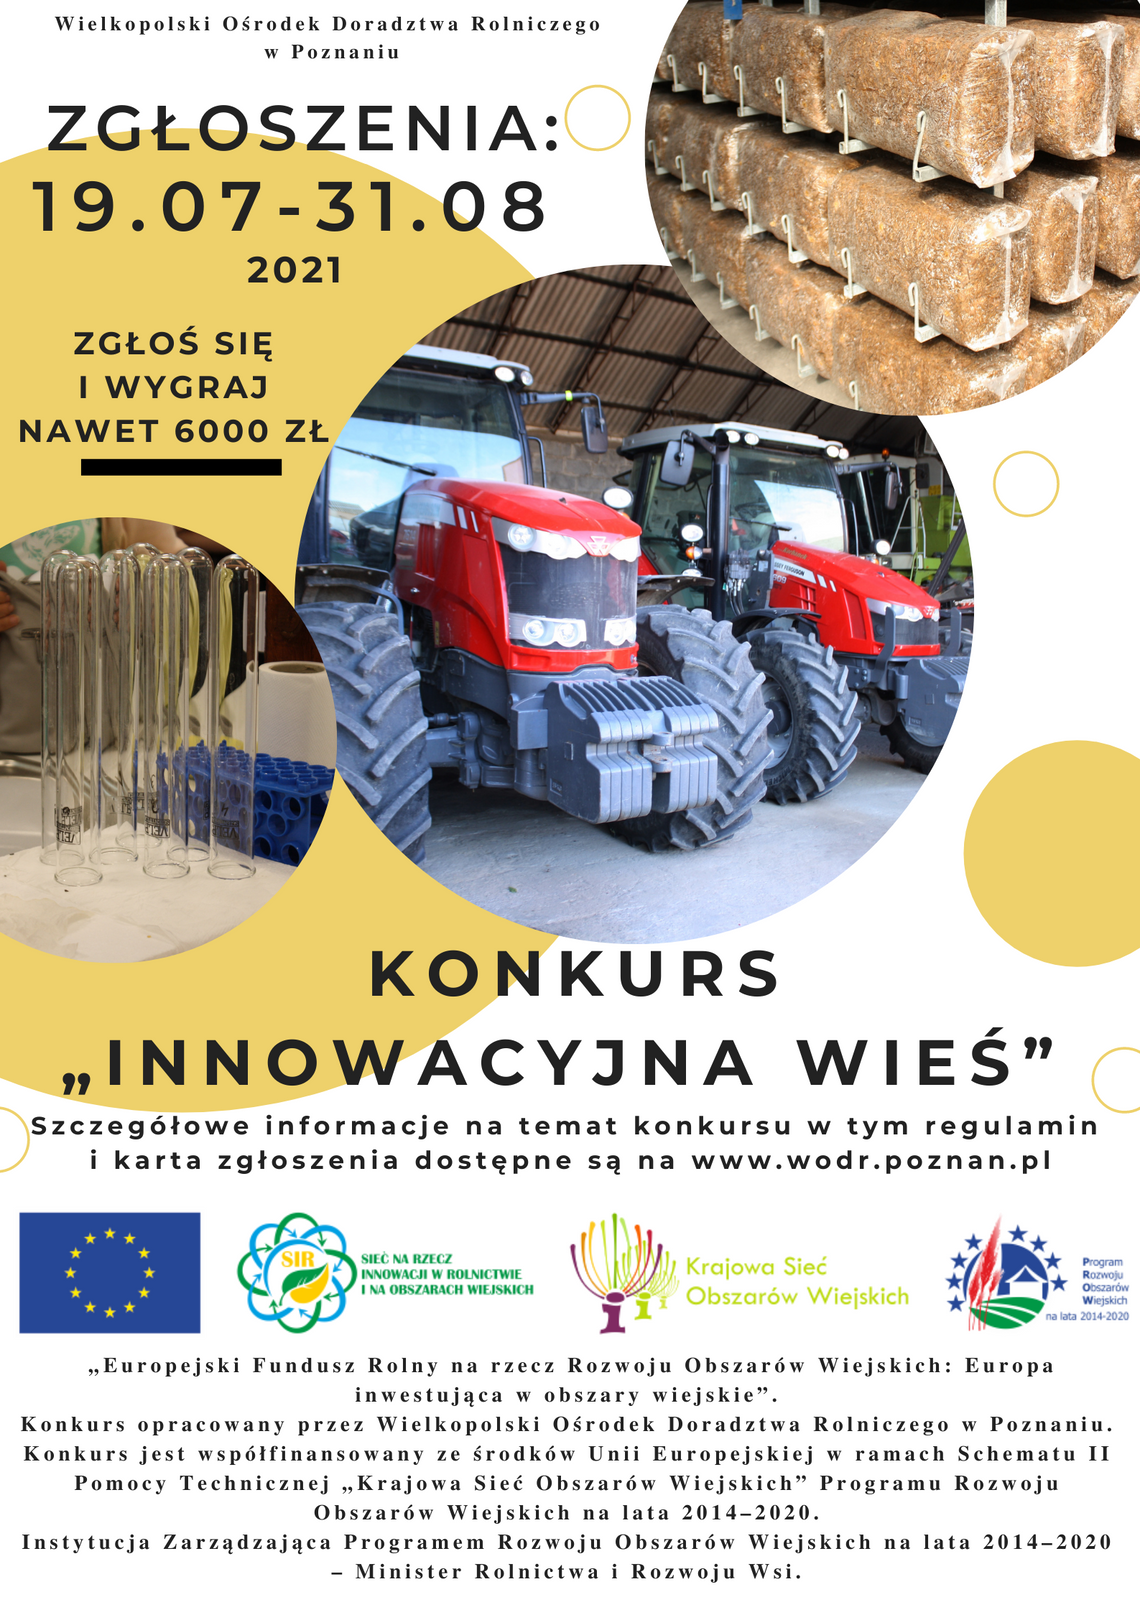 Innowacyjna wieś, czyli konkurs dla rolników i przedsiębiorców z Wielkopolski